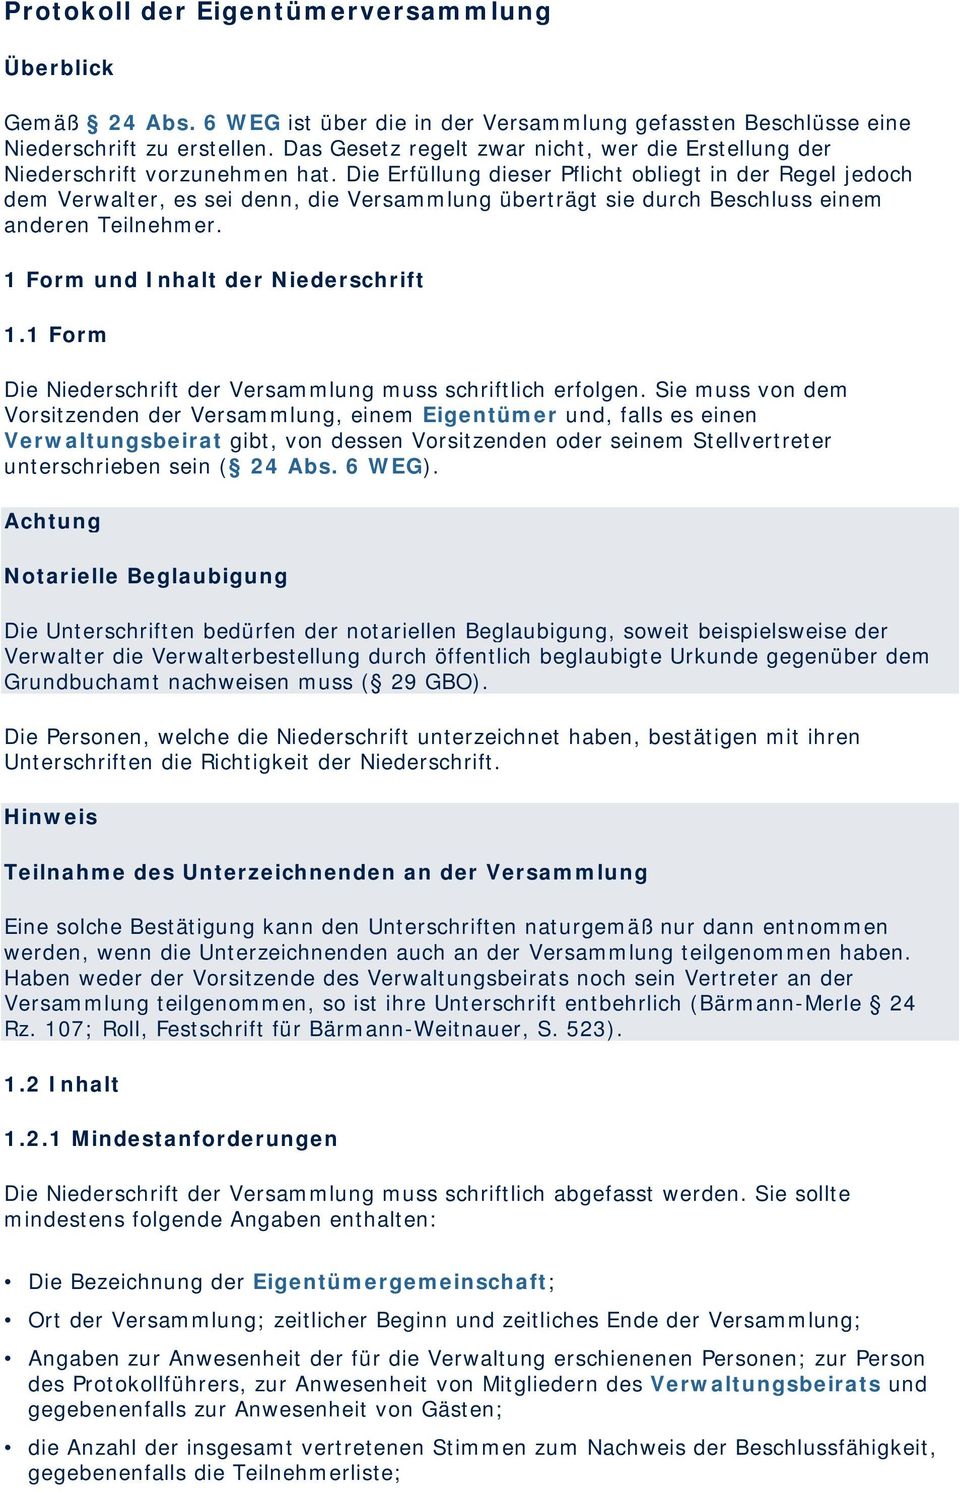 Protokoll Der Eigentumerversammlung Pdf Free Download